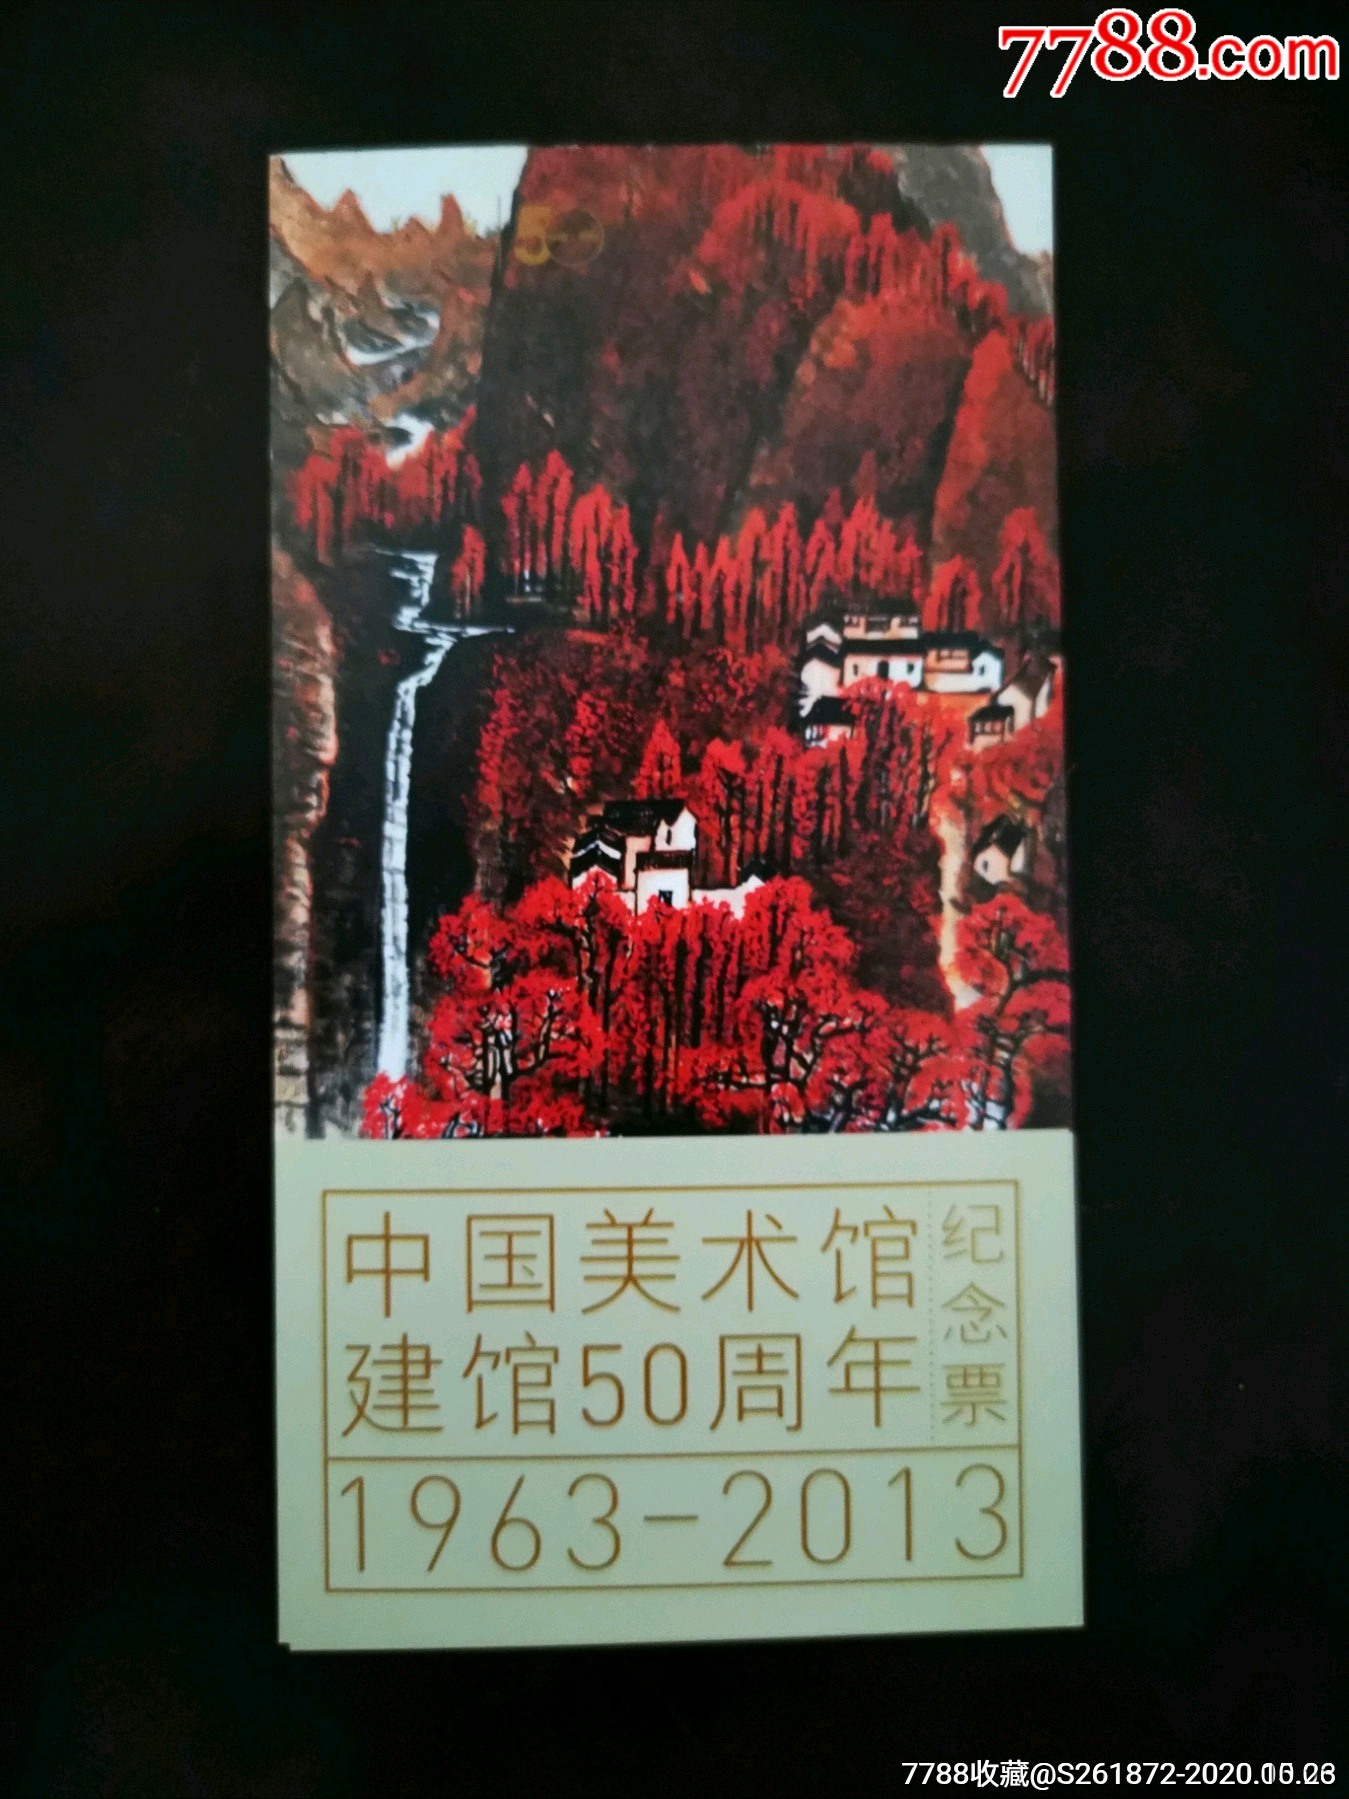 中国美术馆建馆50周年纪念票